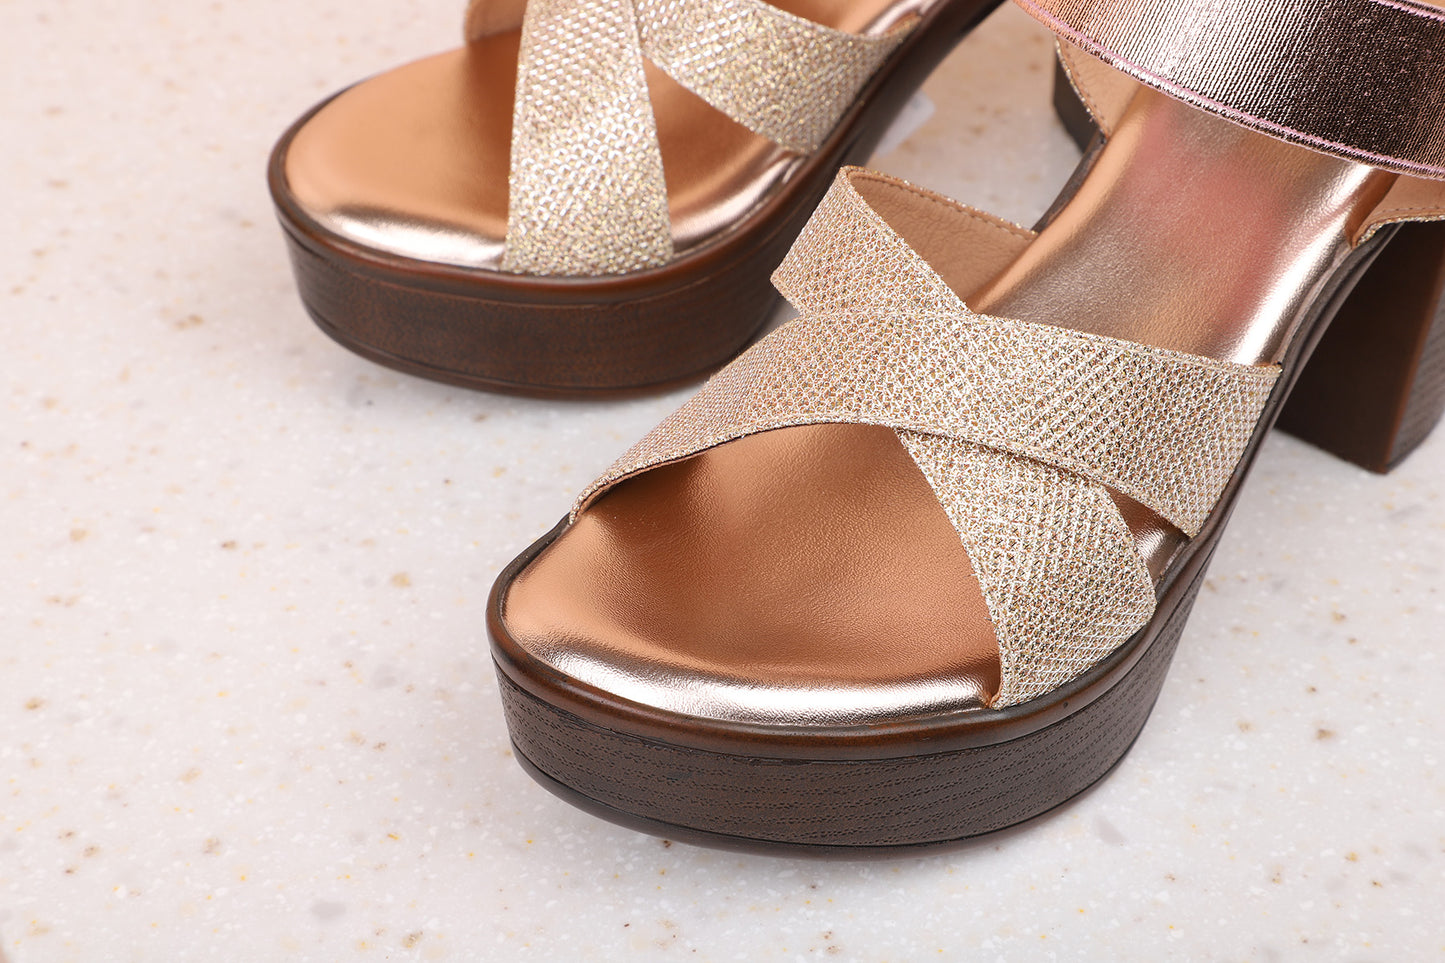 Women Rose Gold Embellished Platform Peep Toes Sandals